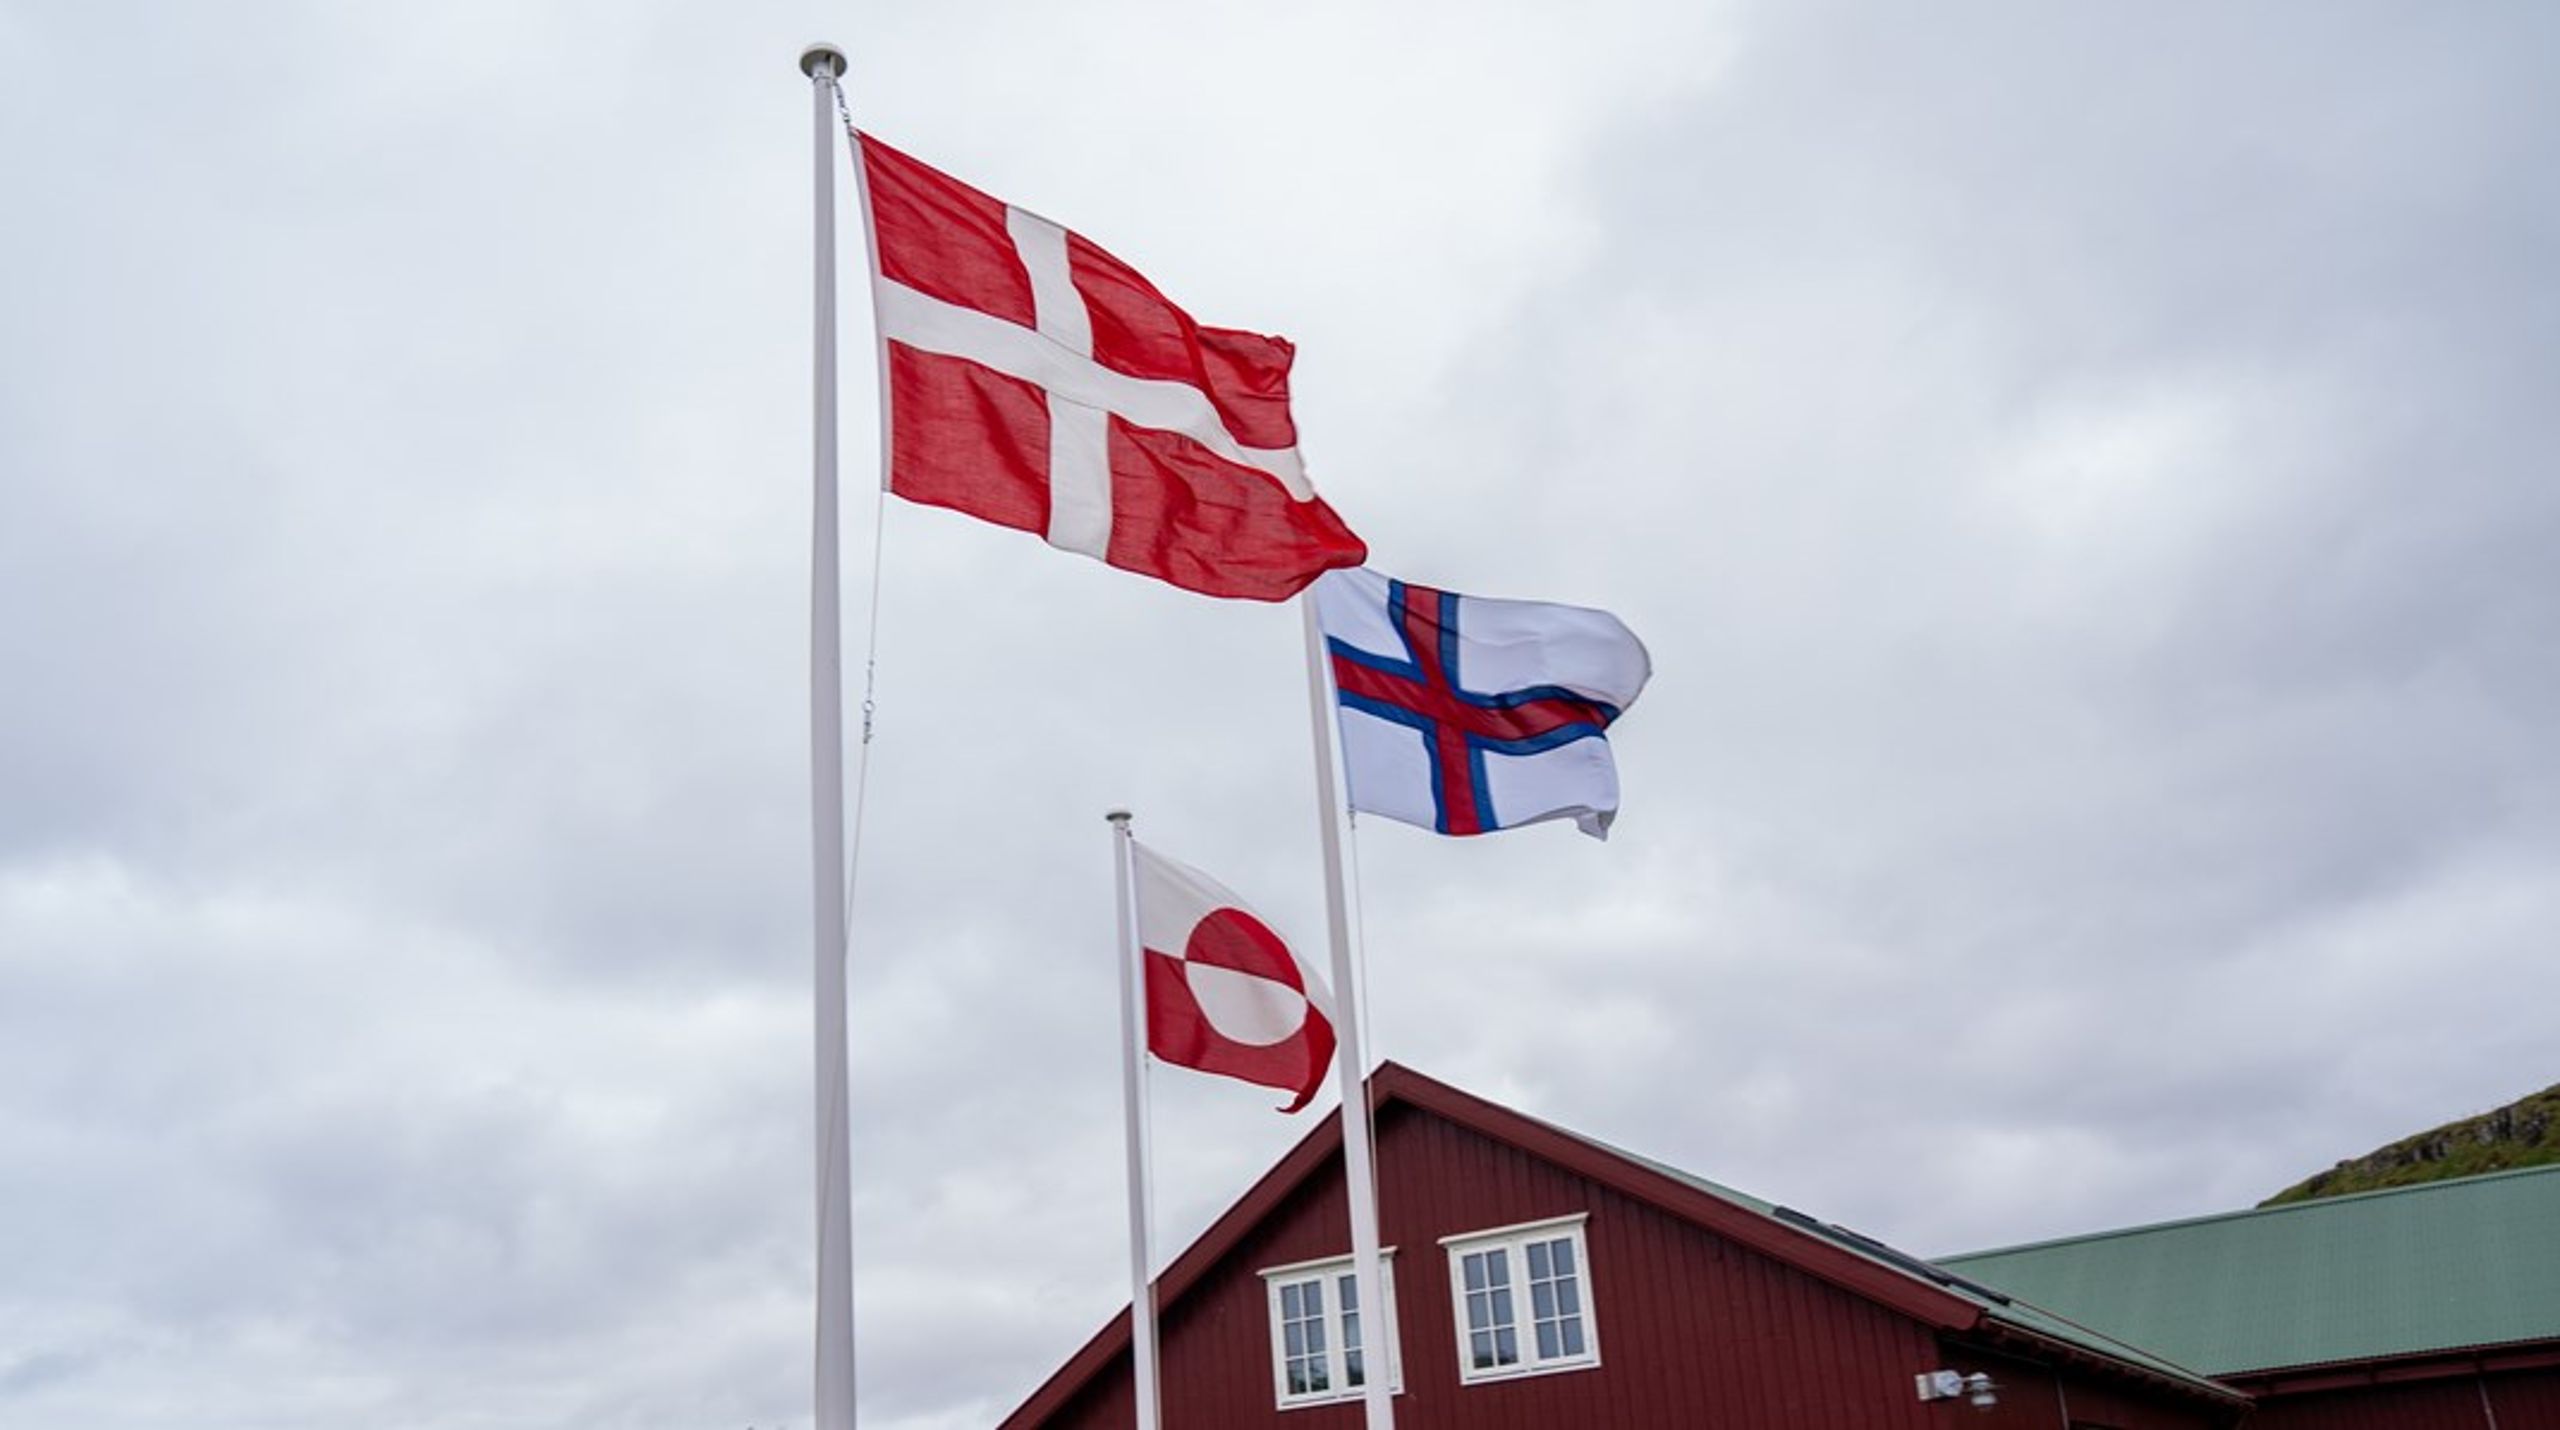 Jeg støtter Rigsfællesskabet mellem Grønland, Færøerne og Danmark, men det har absolut intet at gøre med ønske om en stærkere dansk international position, skriver Karsten Hønge (SF).